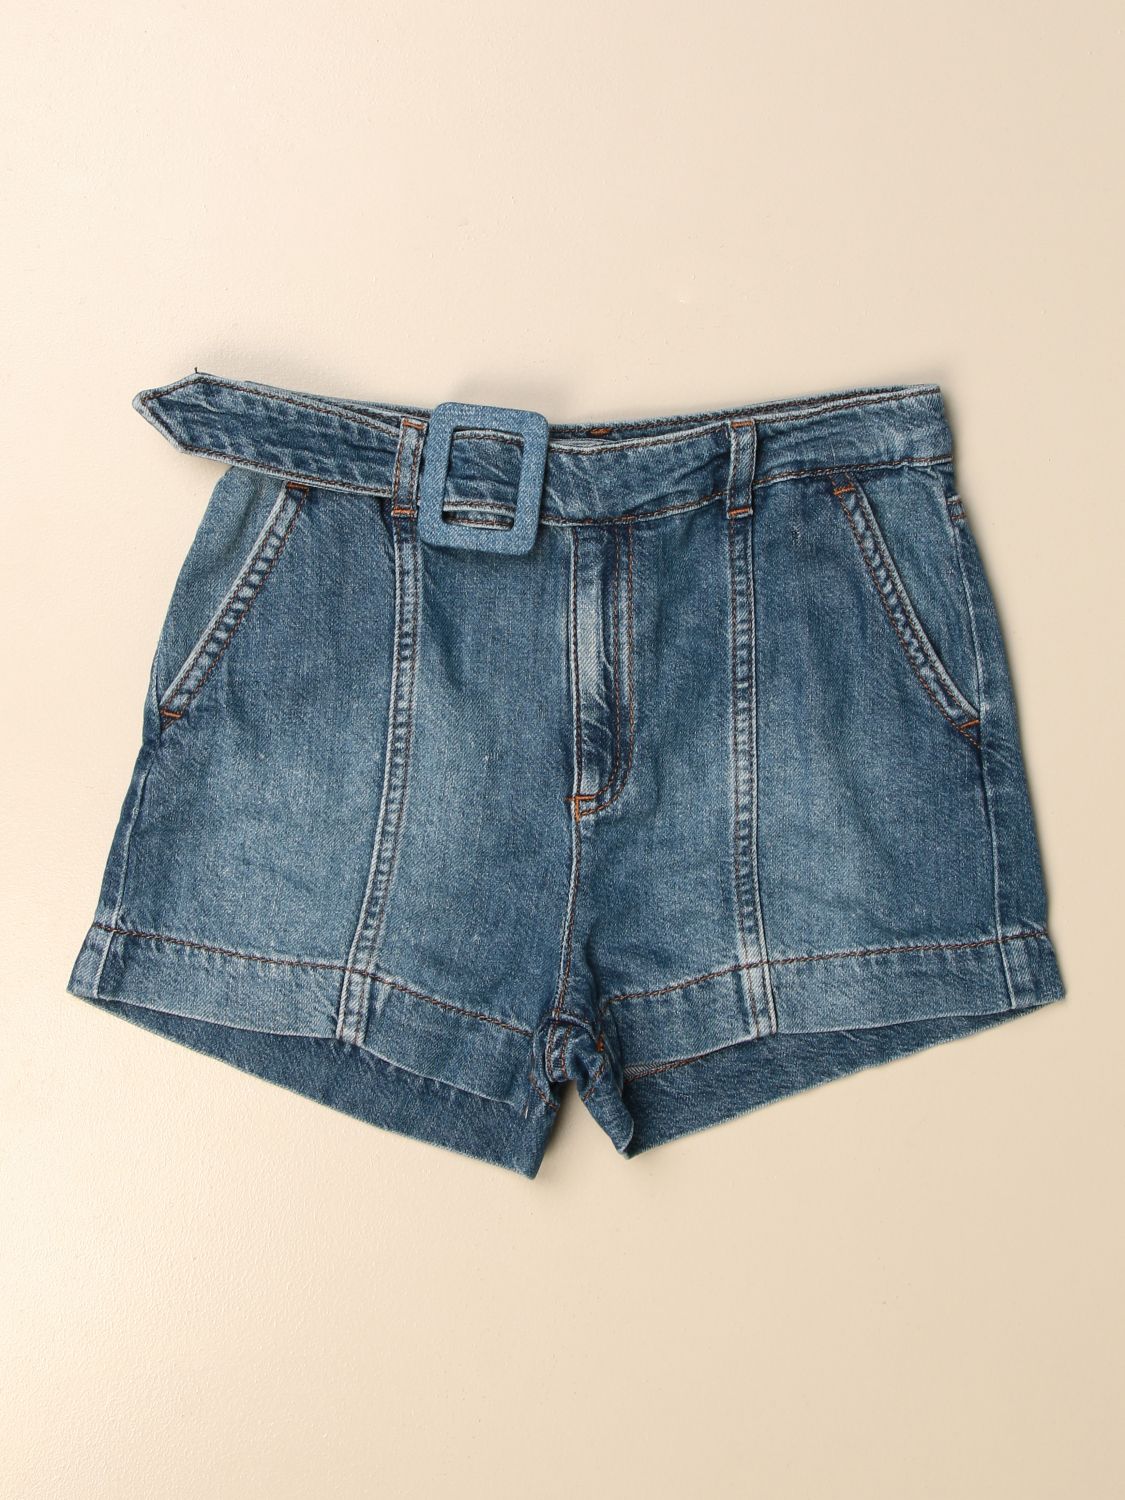 Outlet de Liu Jo: Pantalones cortos niña, Azul Oscuro | Pantalones Cortos Jo GA1151D4539 en línea en GIGLIO.COM